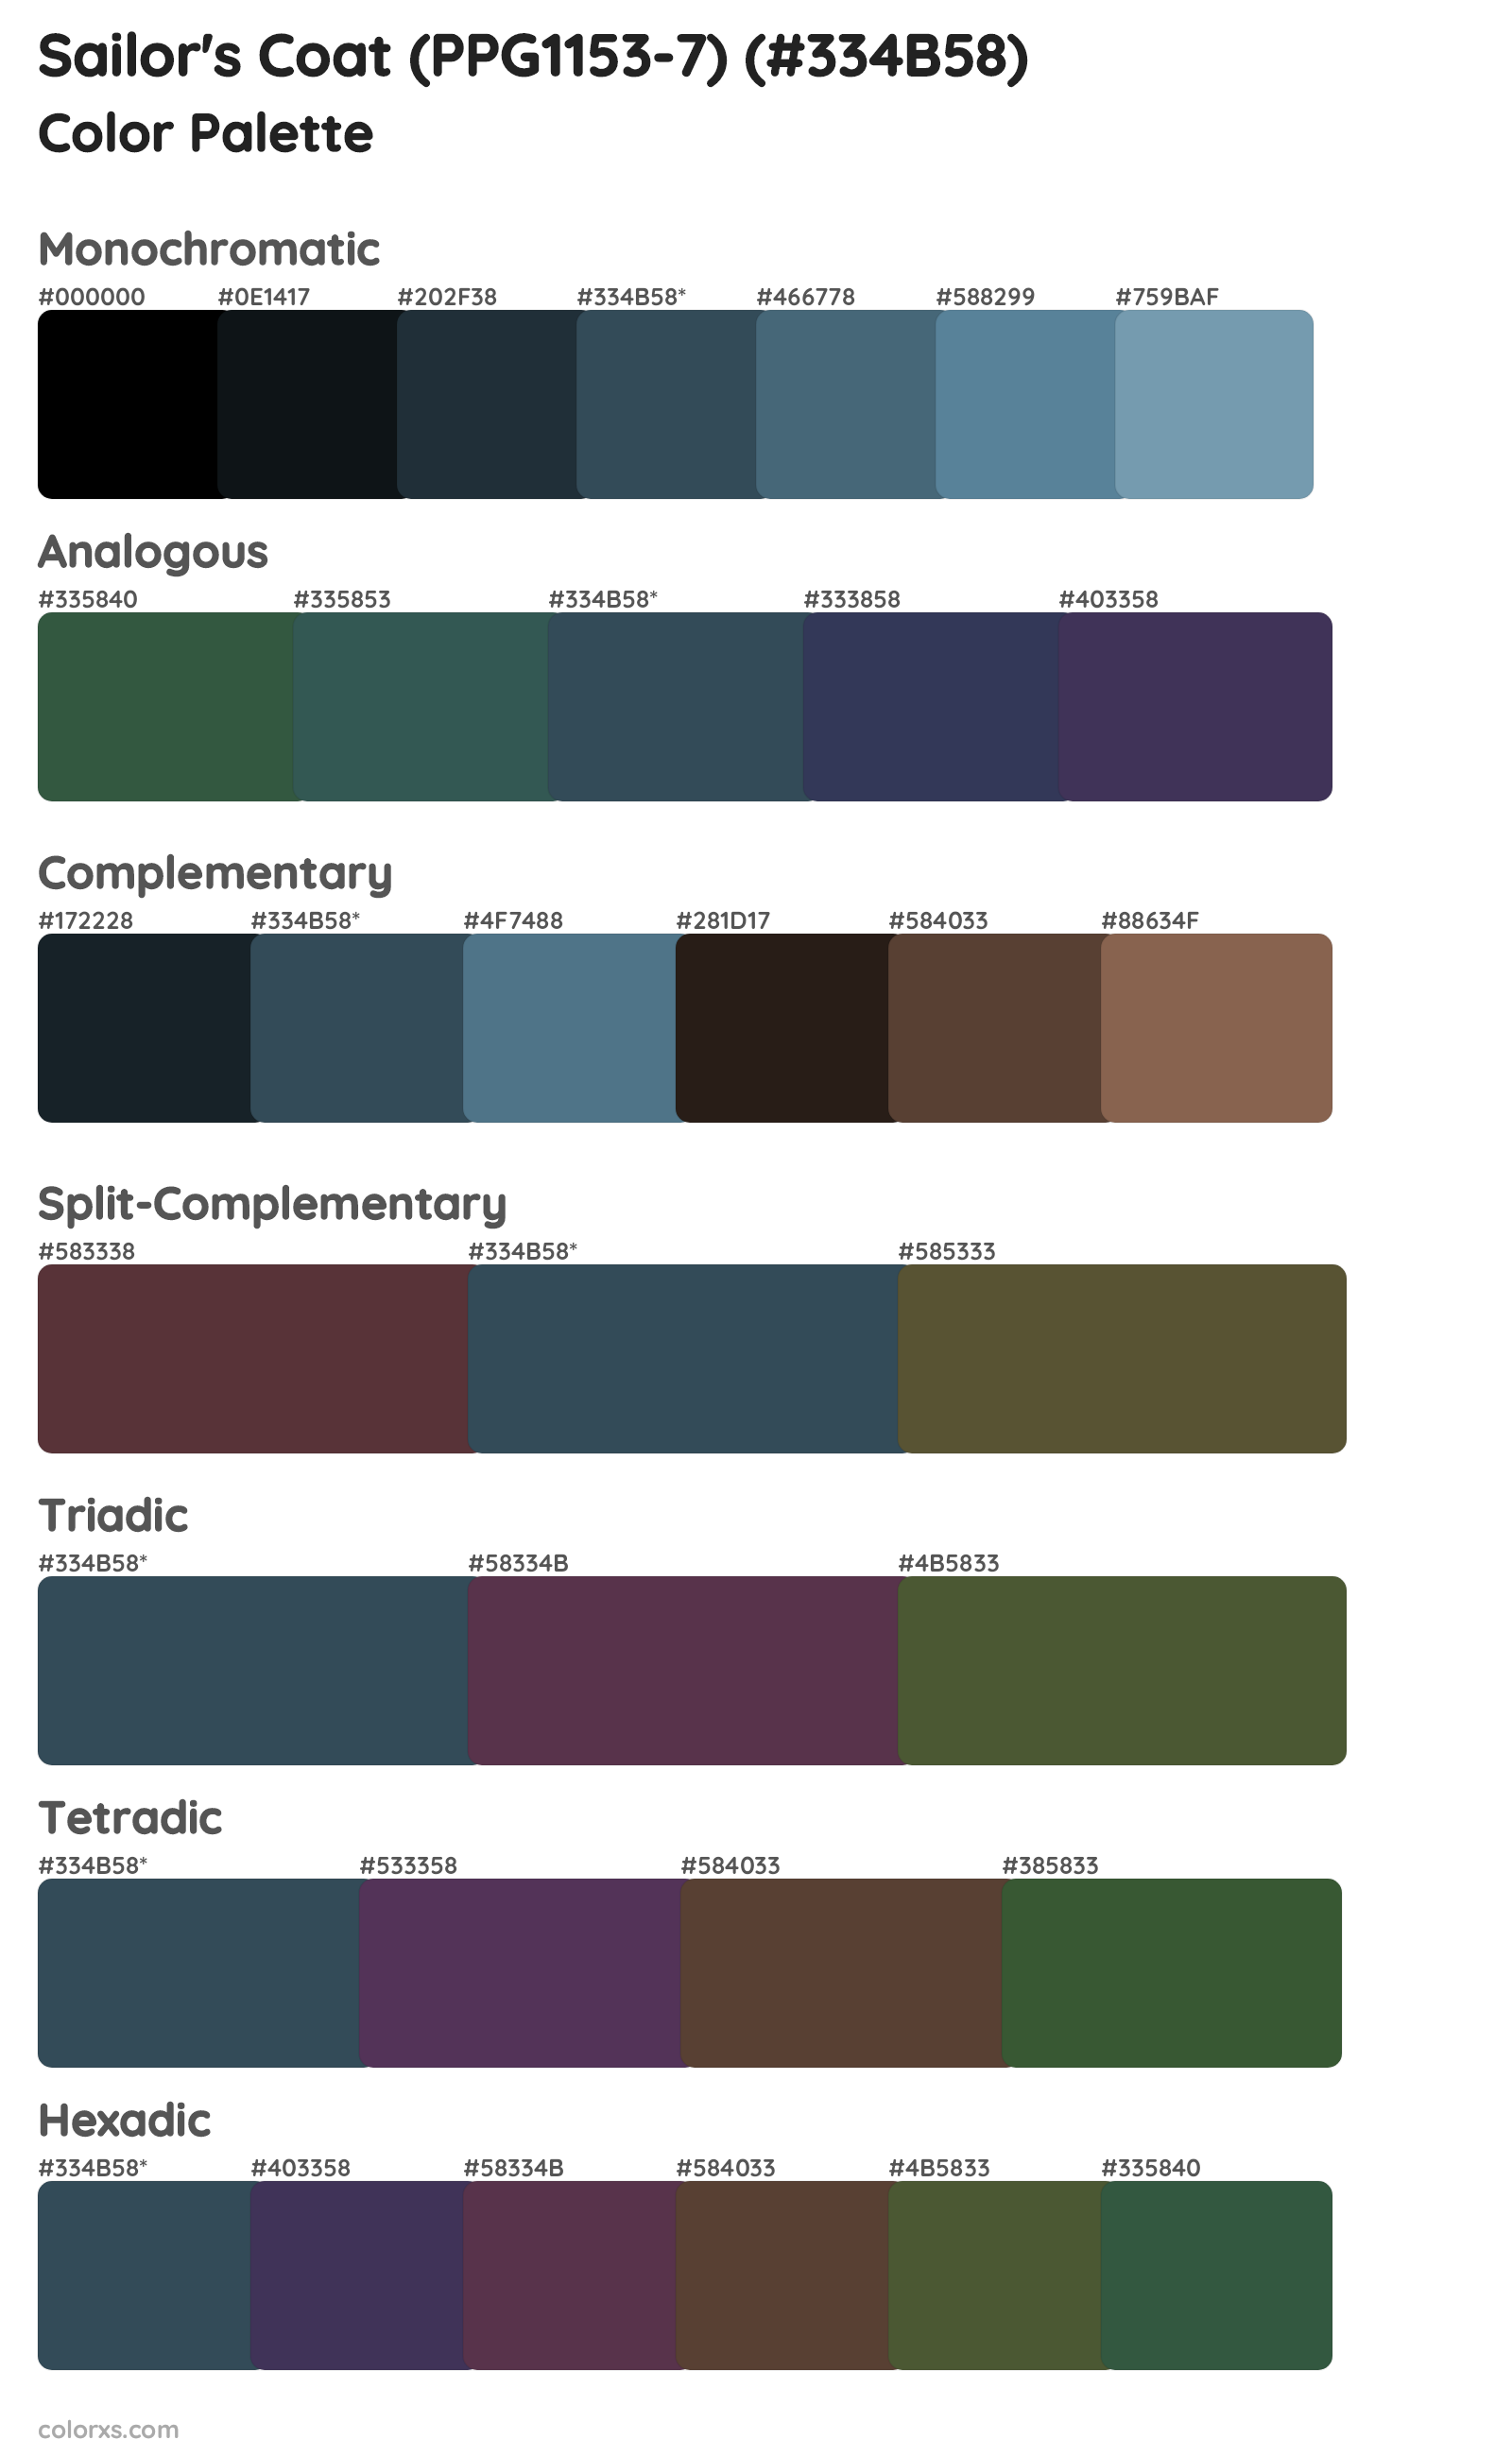 Sailor's Coat (PPG1153-7) Color Scheme Palettes